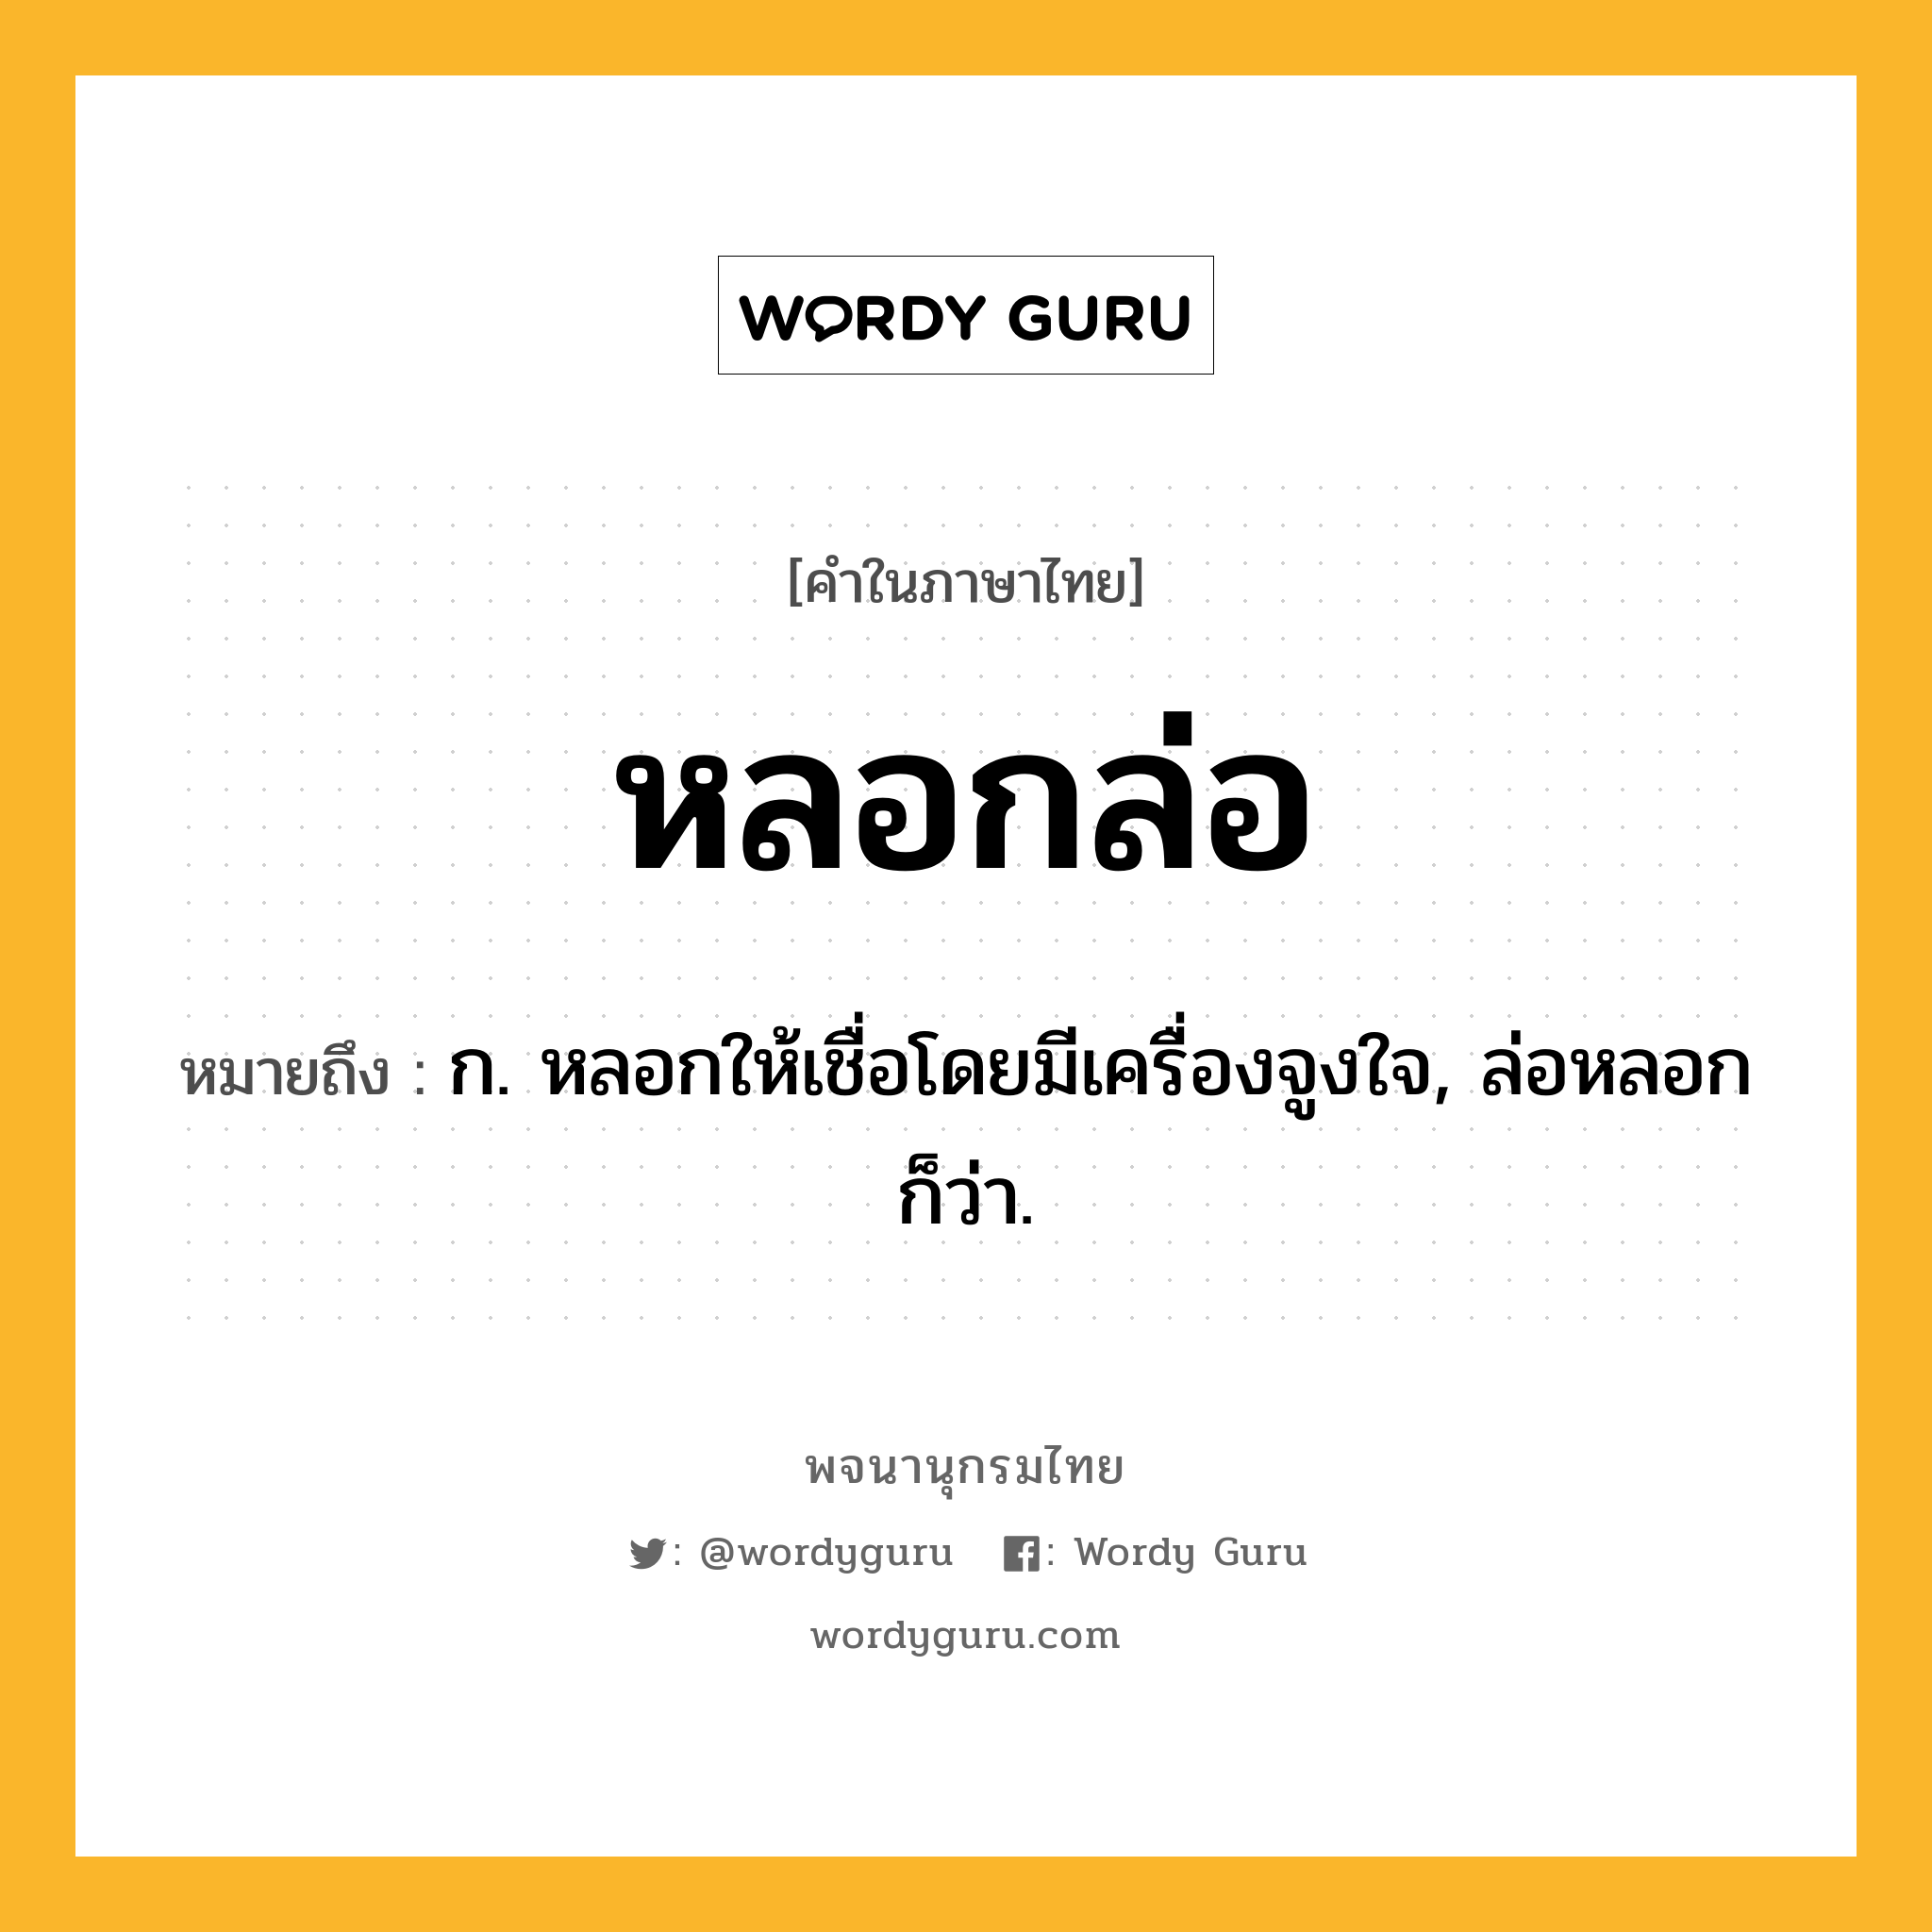 หลอกล่อ หมายถึงอะไร?, คำในภาษาไทย หลอกล่อ หมายถึง ก. หลอกให้เชื่อโดยมีเครื่องจูงใจ, ล่อหลอก ก็ว่า.